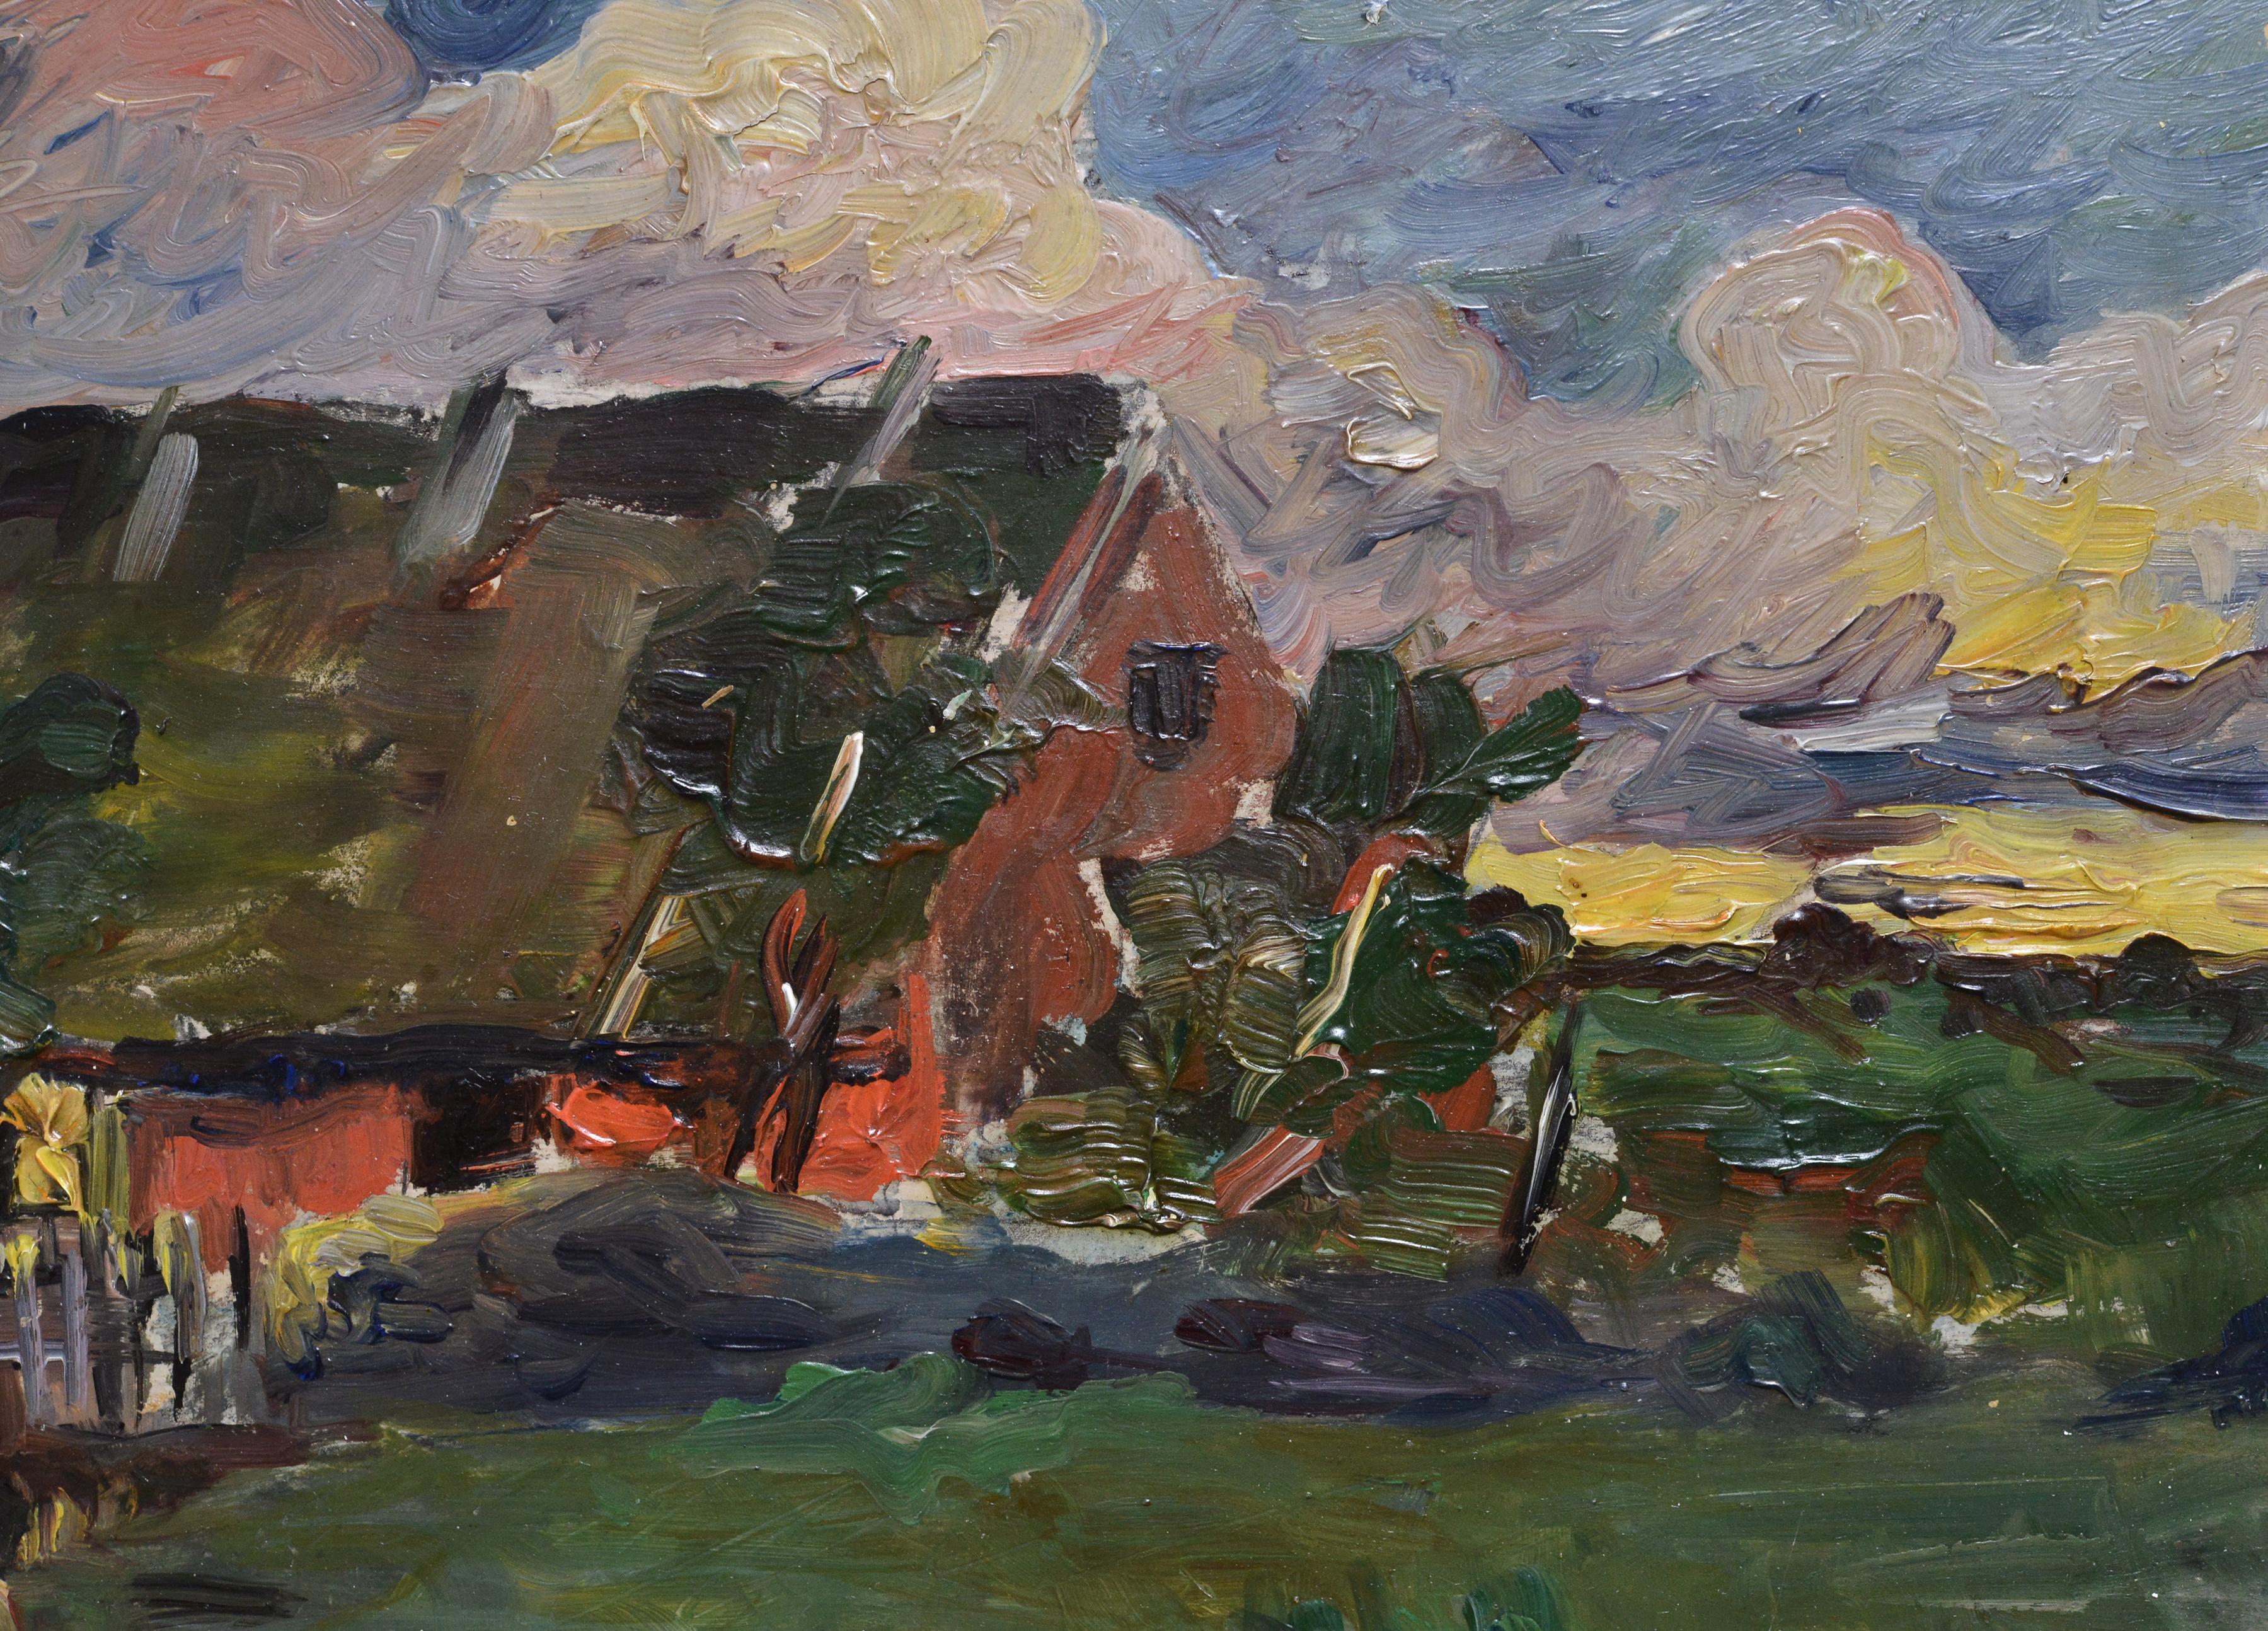 Vivid Landscape Before Storm, lebendige Landschaft schwedischer Meister, 19. Jahrhundert (Impressionismus), Painting, von Wilhelm von Gegerfelt 